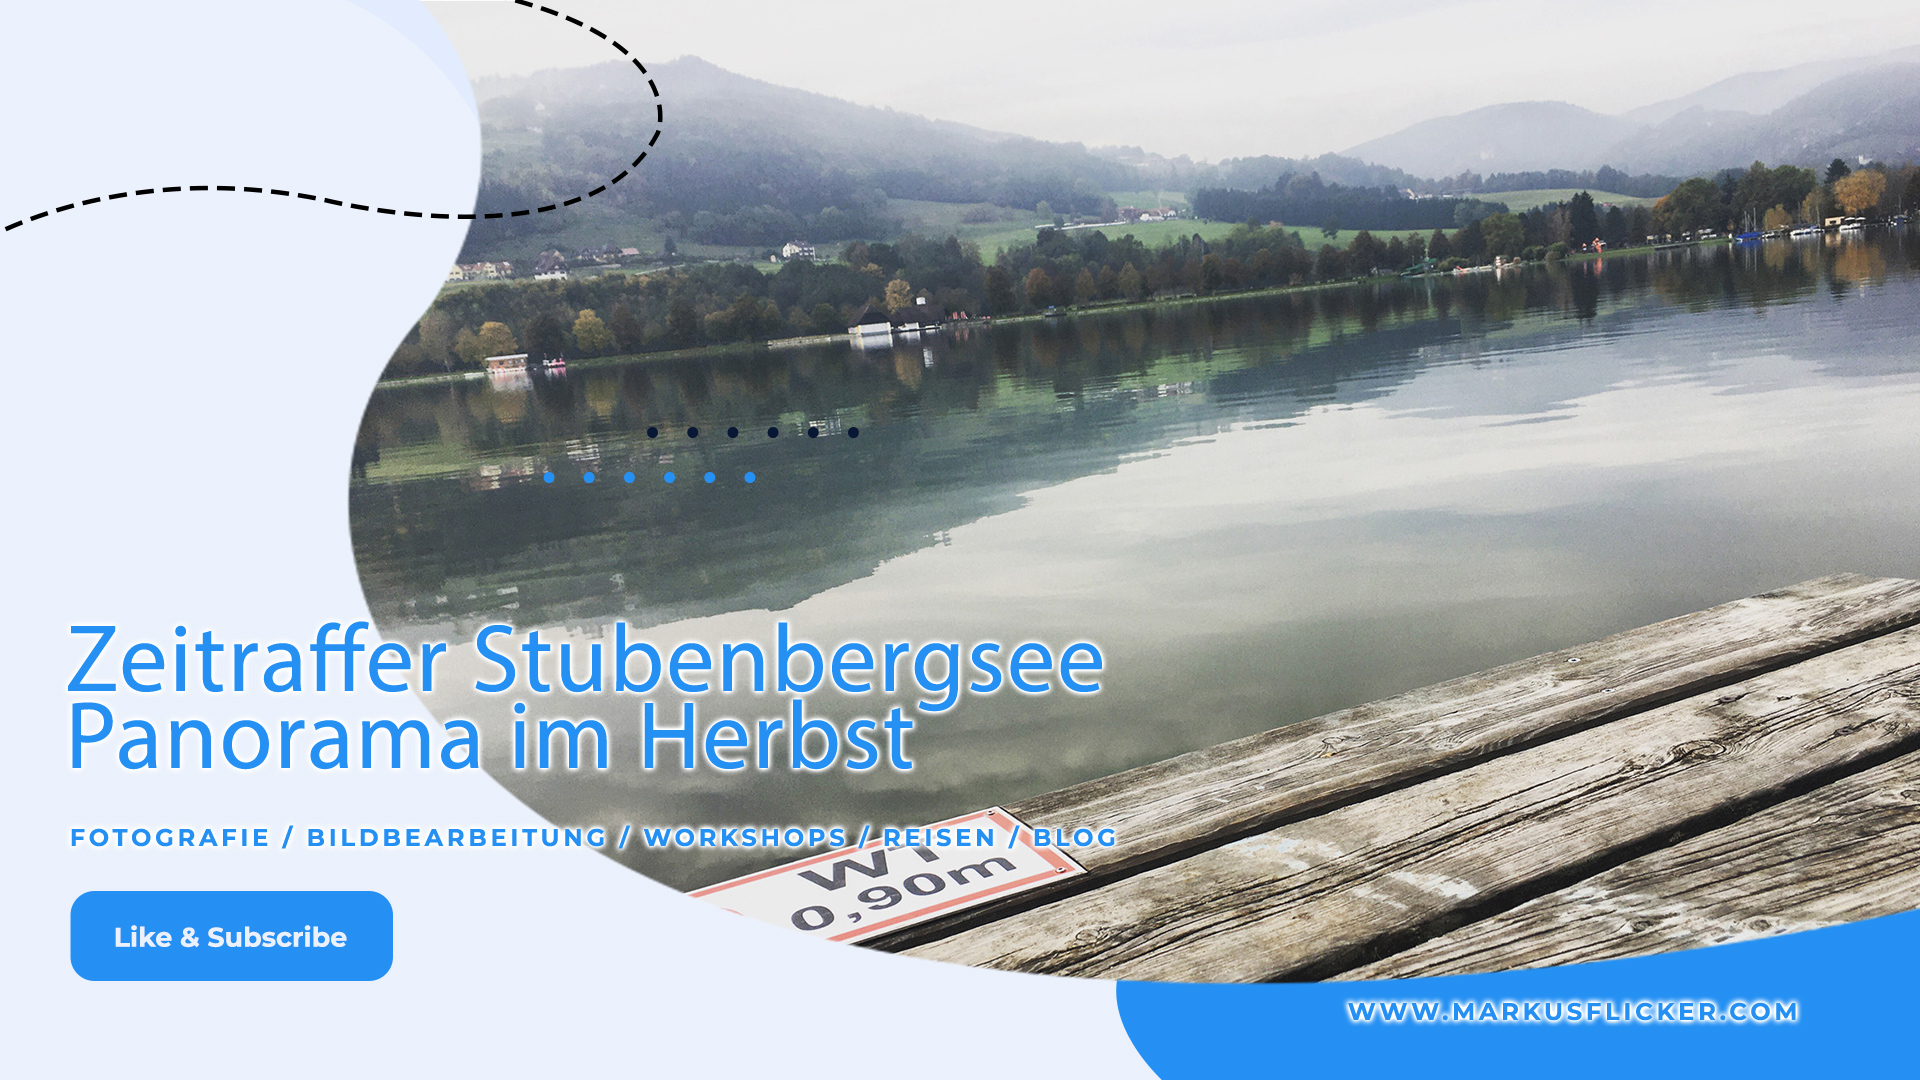 Zeitraffer Stubenbergsee Panorama im Herbst mit DJI Osmo Mobile und iPhone Smartphone. Kreative Videos mit dem Handy